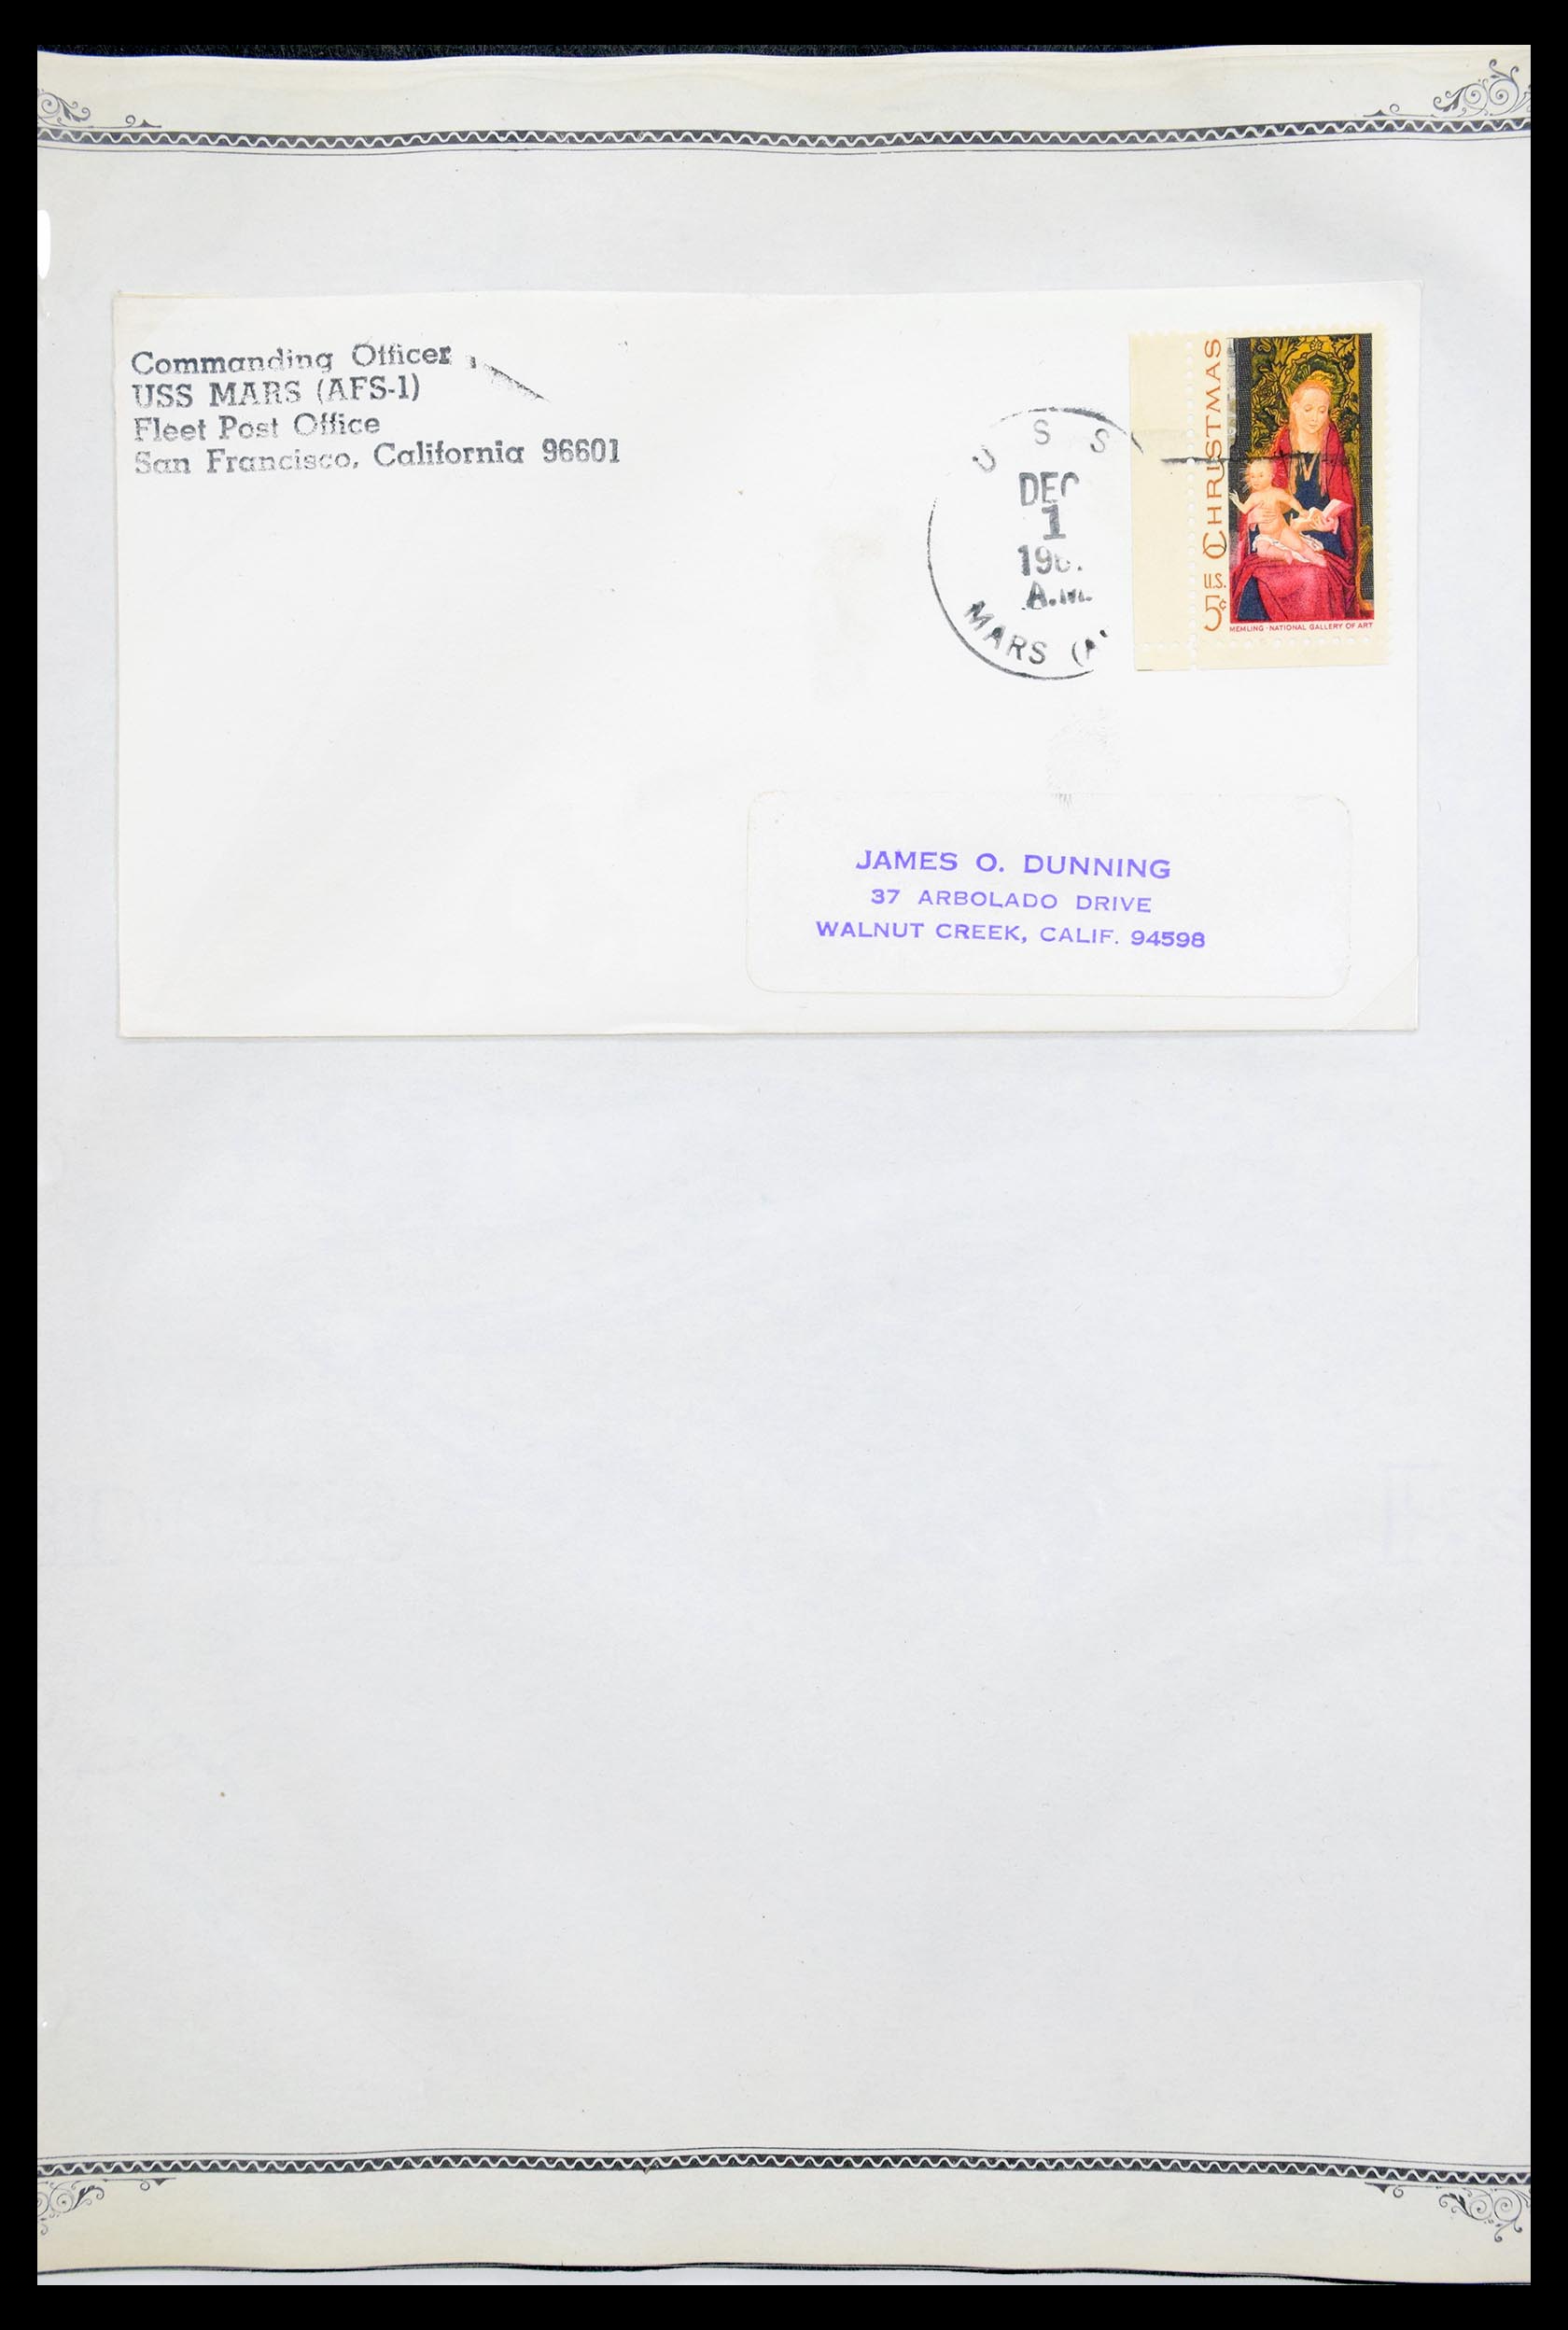 30341 033 - 30341 USA scheepspost brieven 1930-1970.